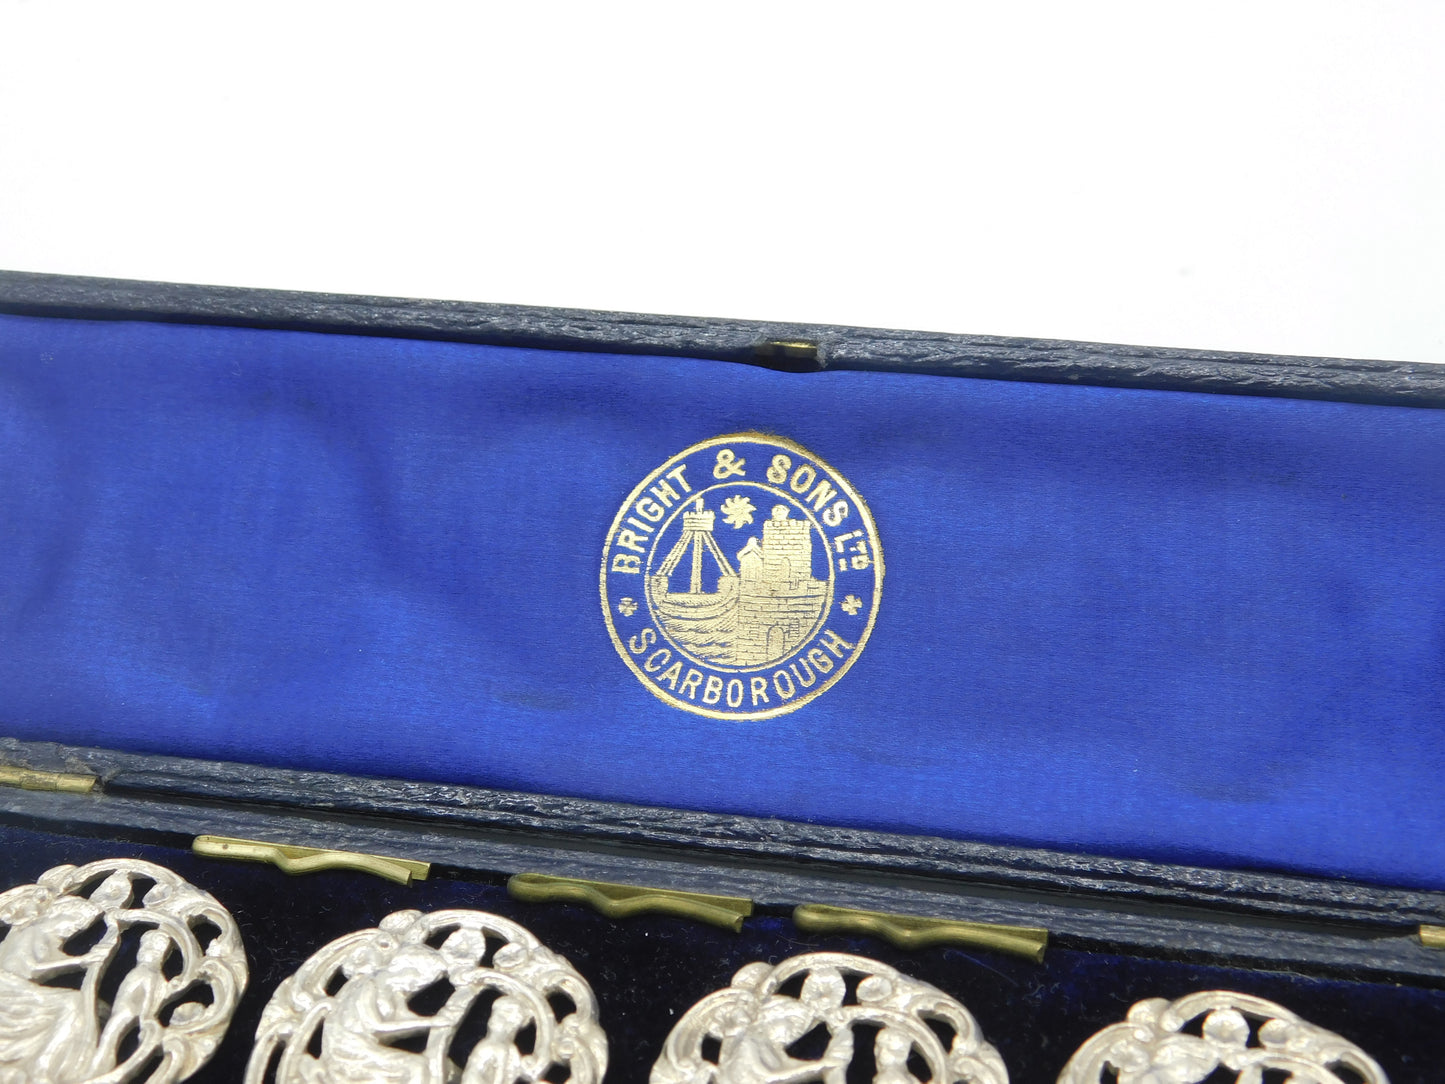 Victorian Boxed Set of Silver Art Nouveau Classical Buttons Antique c1890